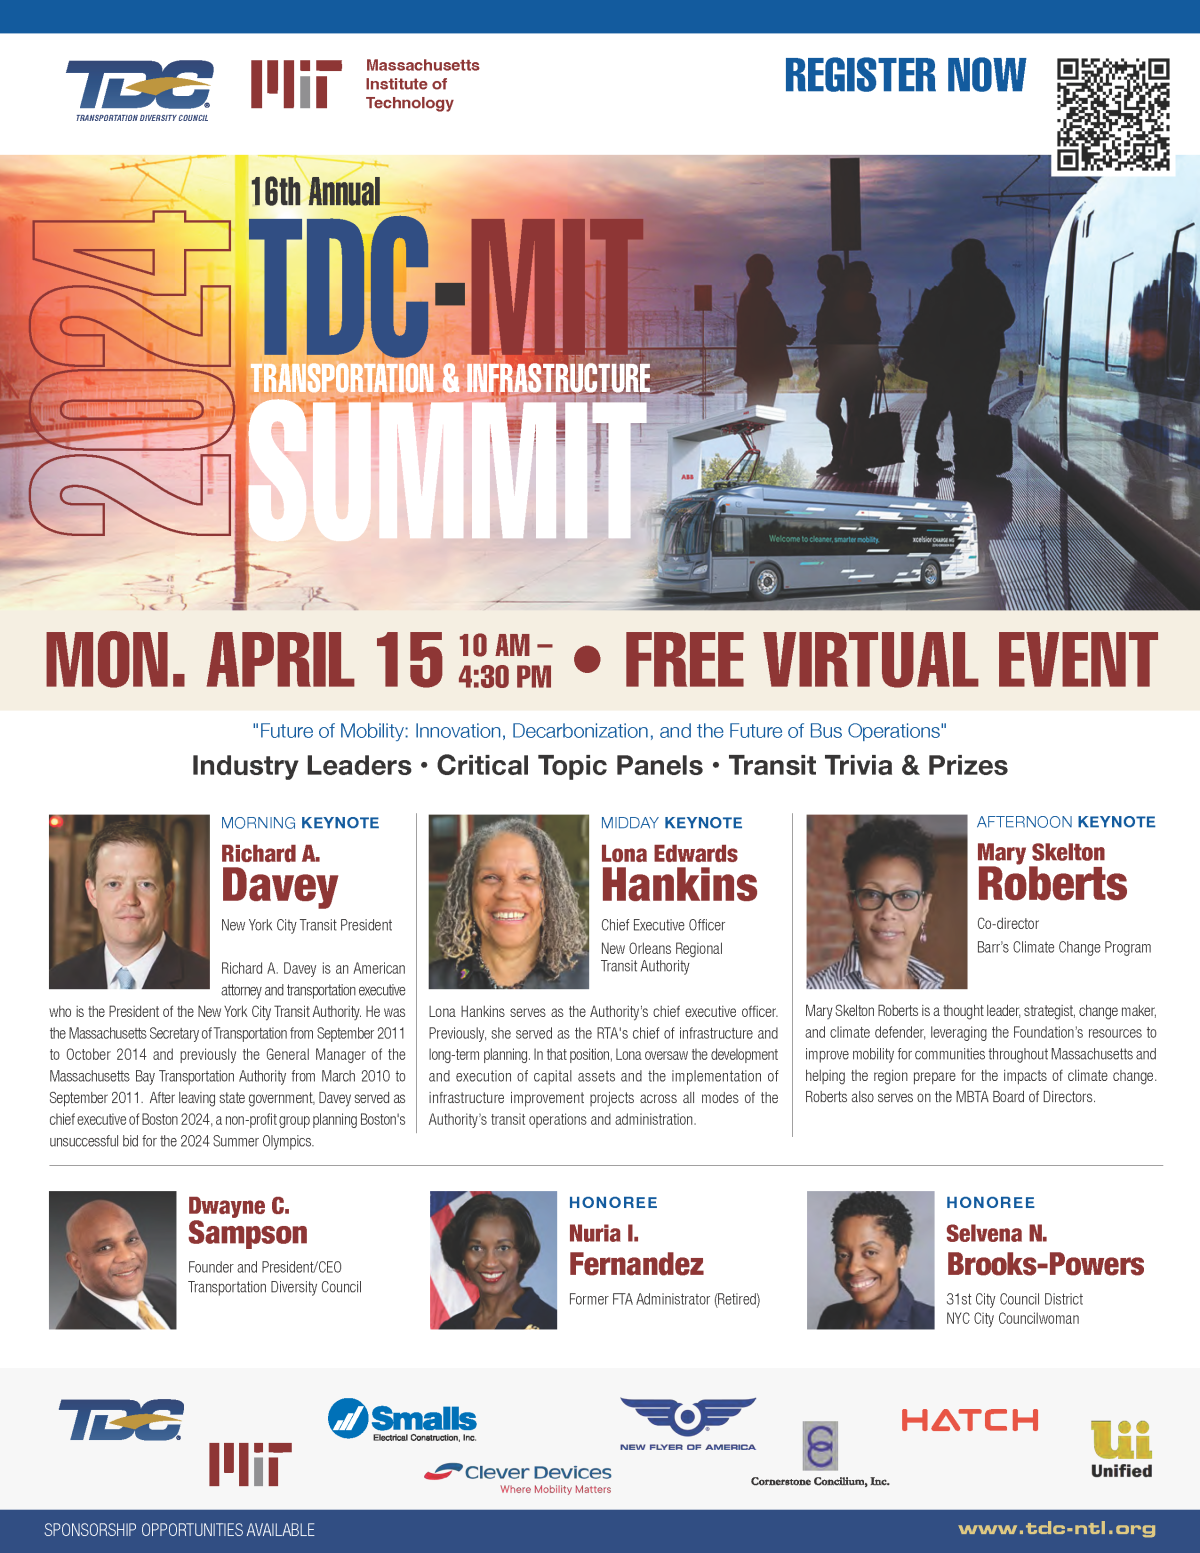 TDC-MIT Trans & Infra Summit